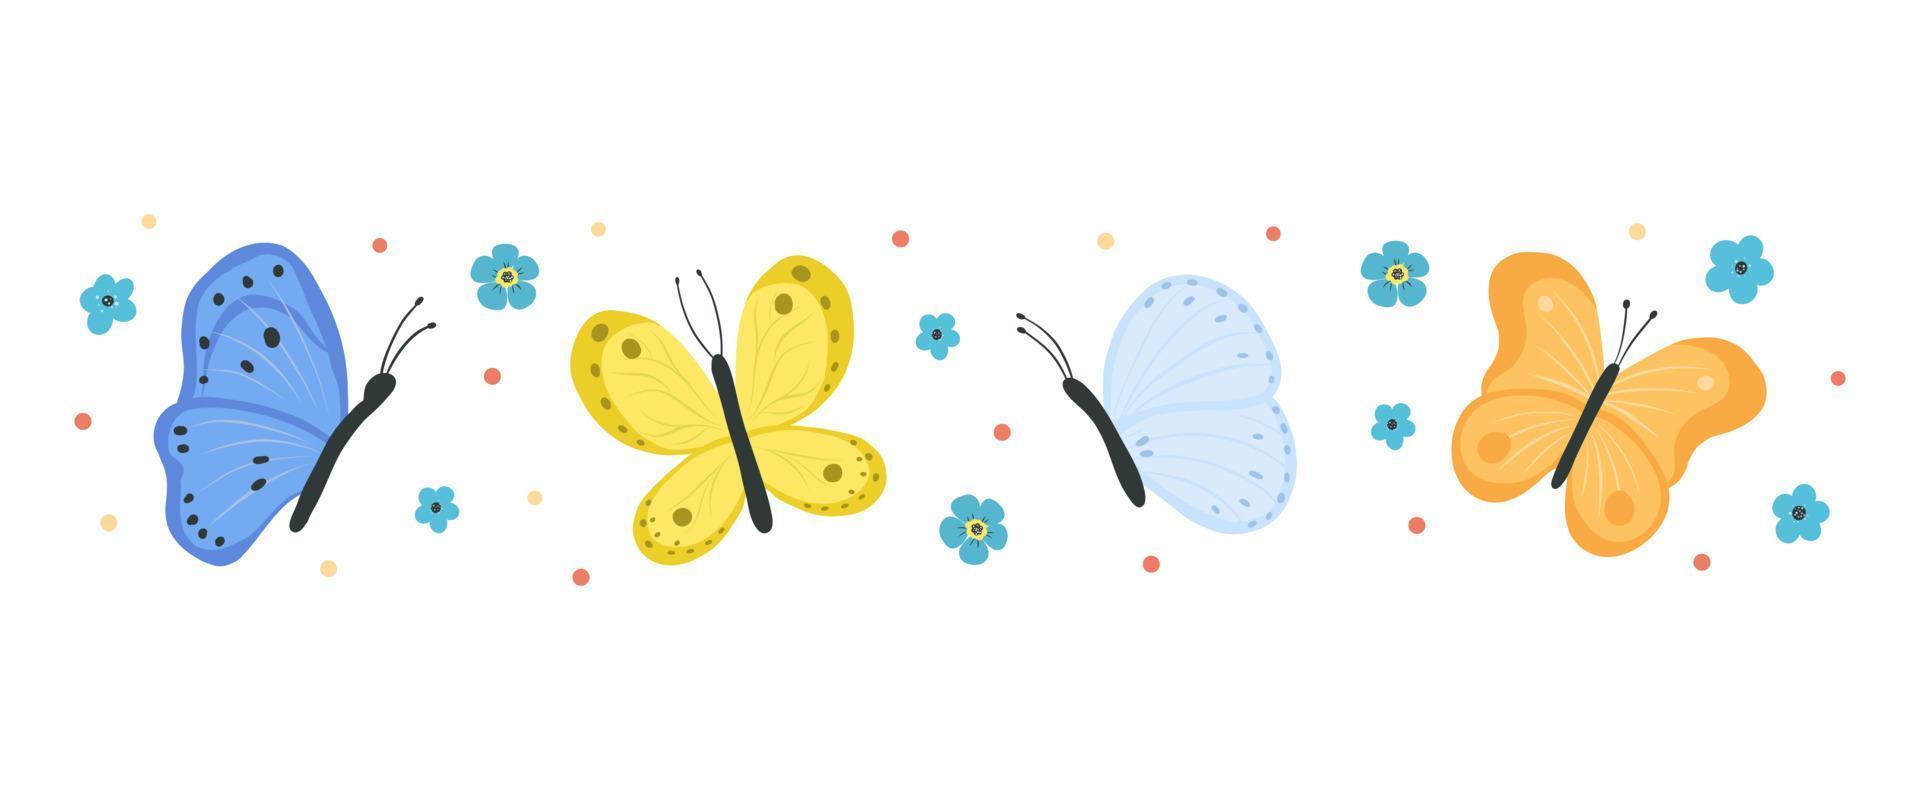 colección de mariposas y polillas aisladas sobre fondo blanco. conjunto de insectos voladores con alas de colores. paquete de elementos de diseño decorativo. ilustración vectorial plana. vector